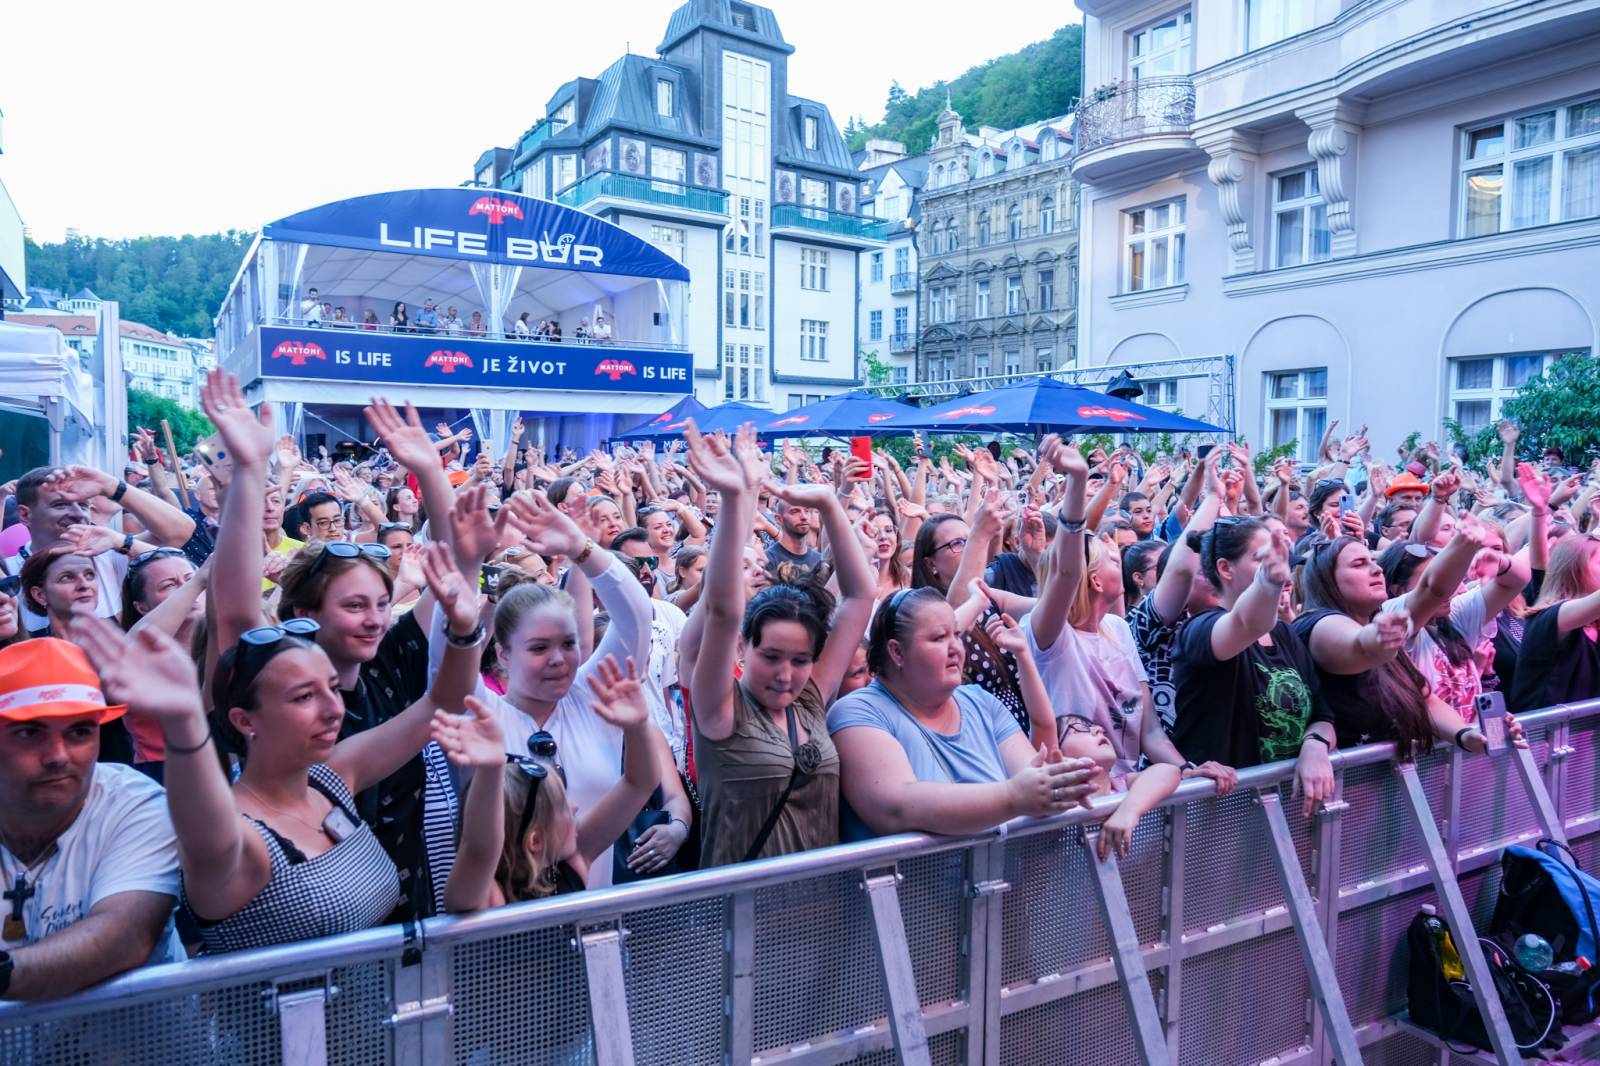 Hudba, filmy a párty dlouho do noci. Festival v Karlových Varech má za sebou třetí den